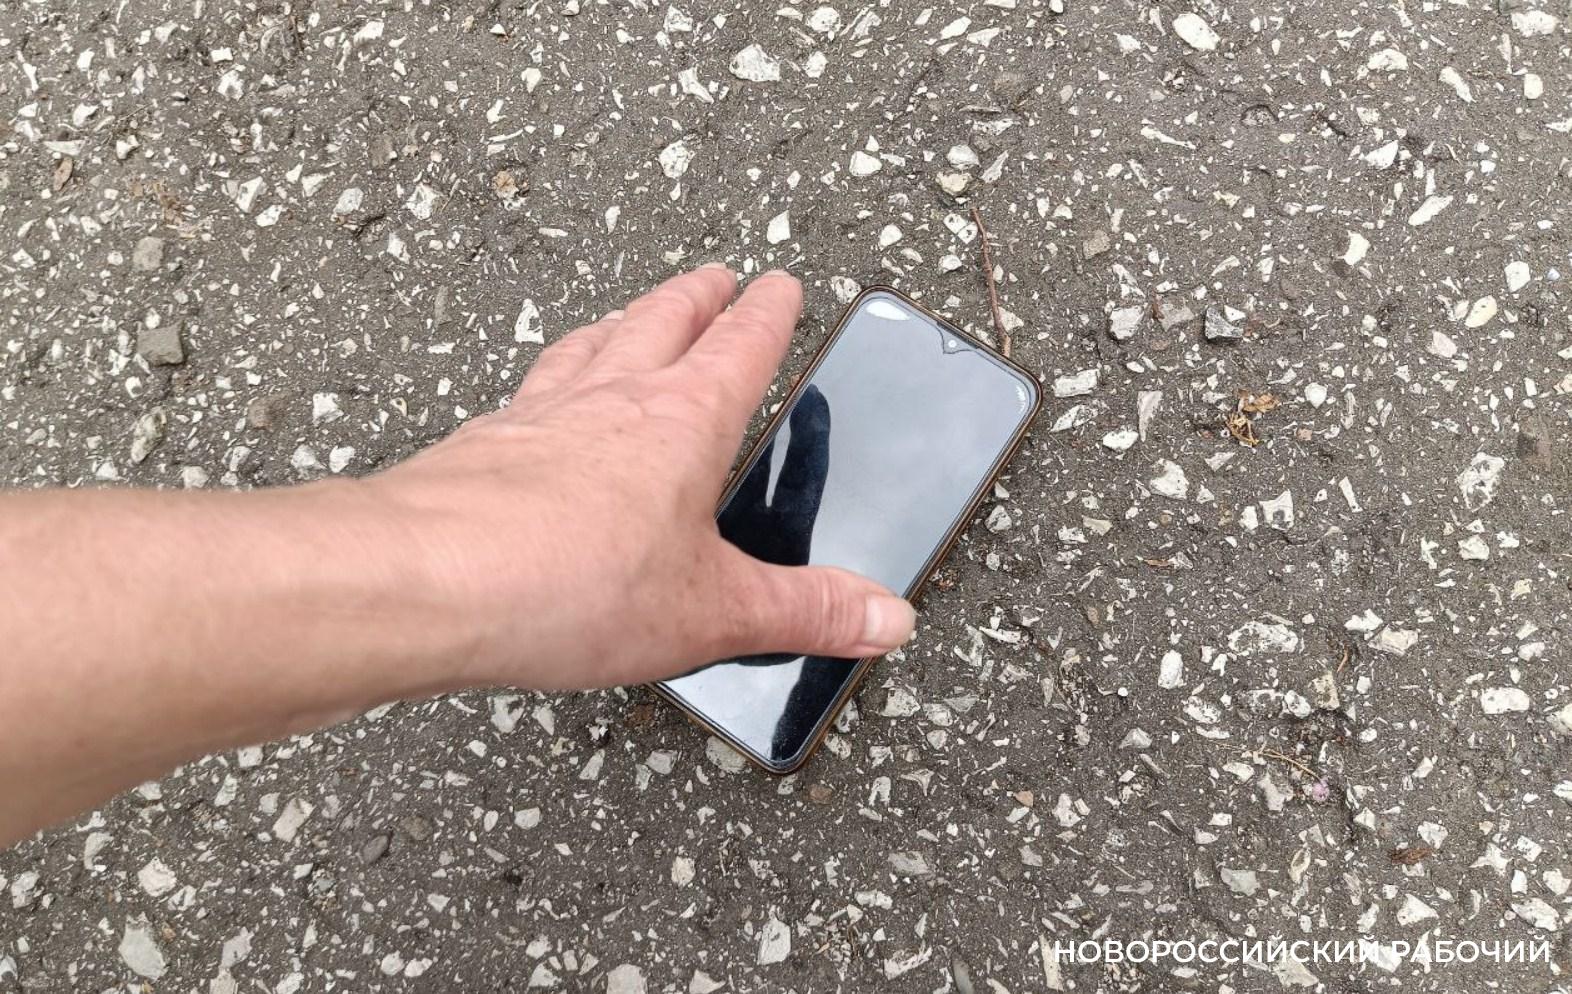 Нашел разбитый телефон на улице. Украли телефон у слепого. Разбил телефон экран из кармана выпал. Мужик украл телефон.